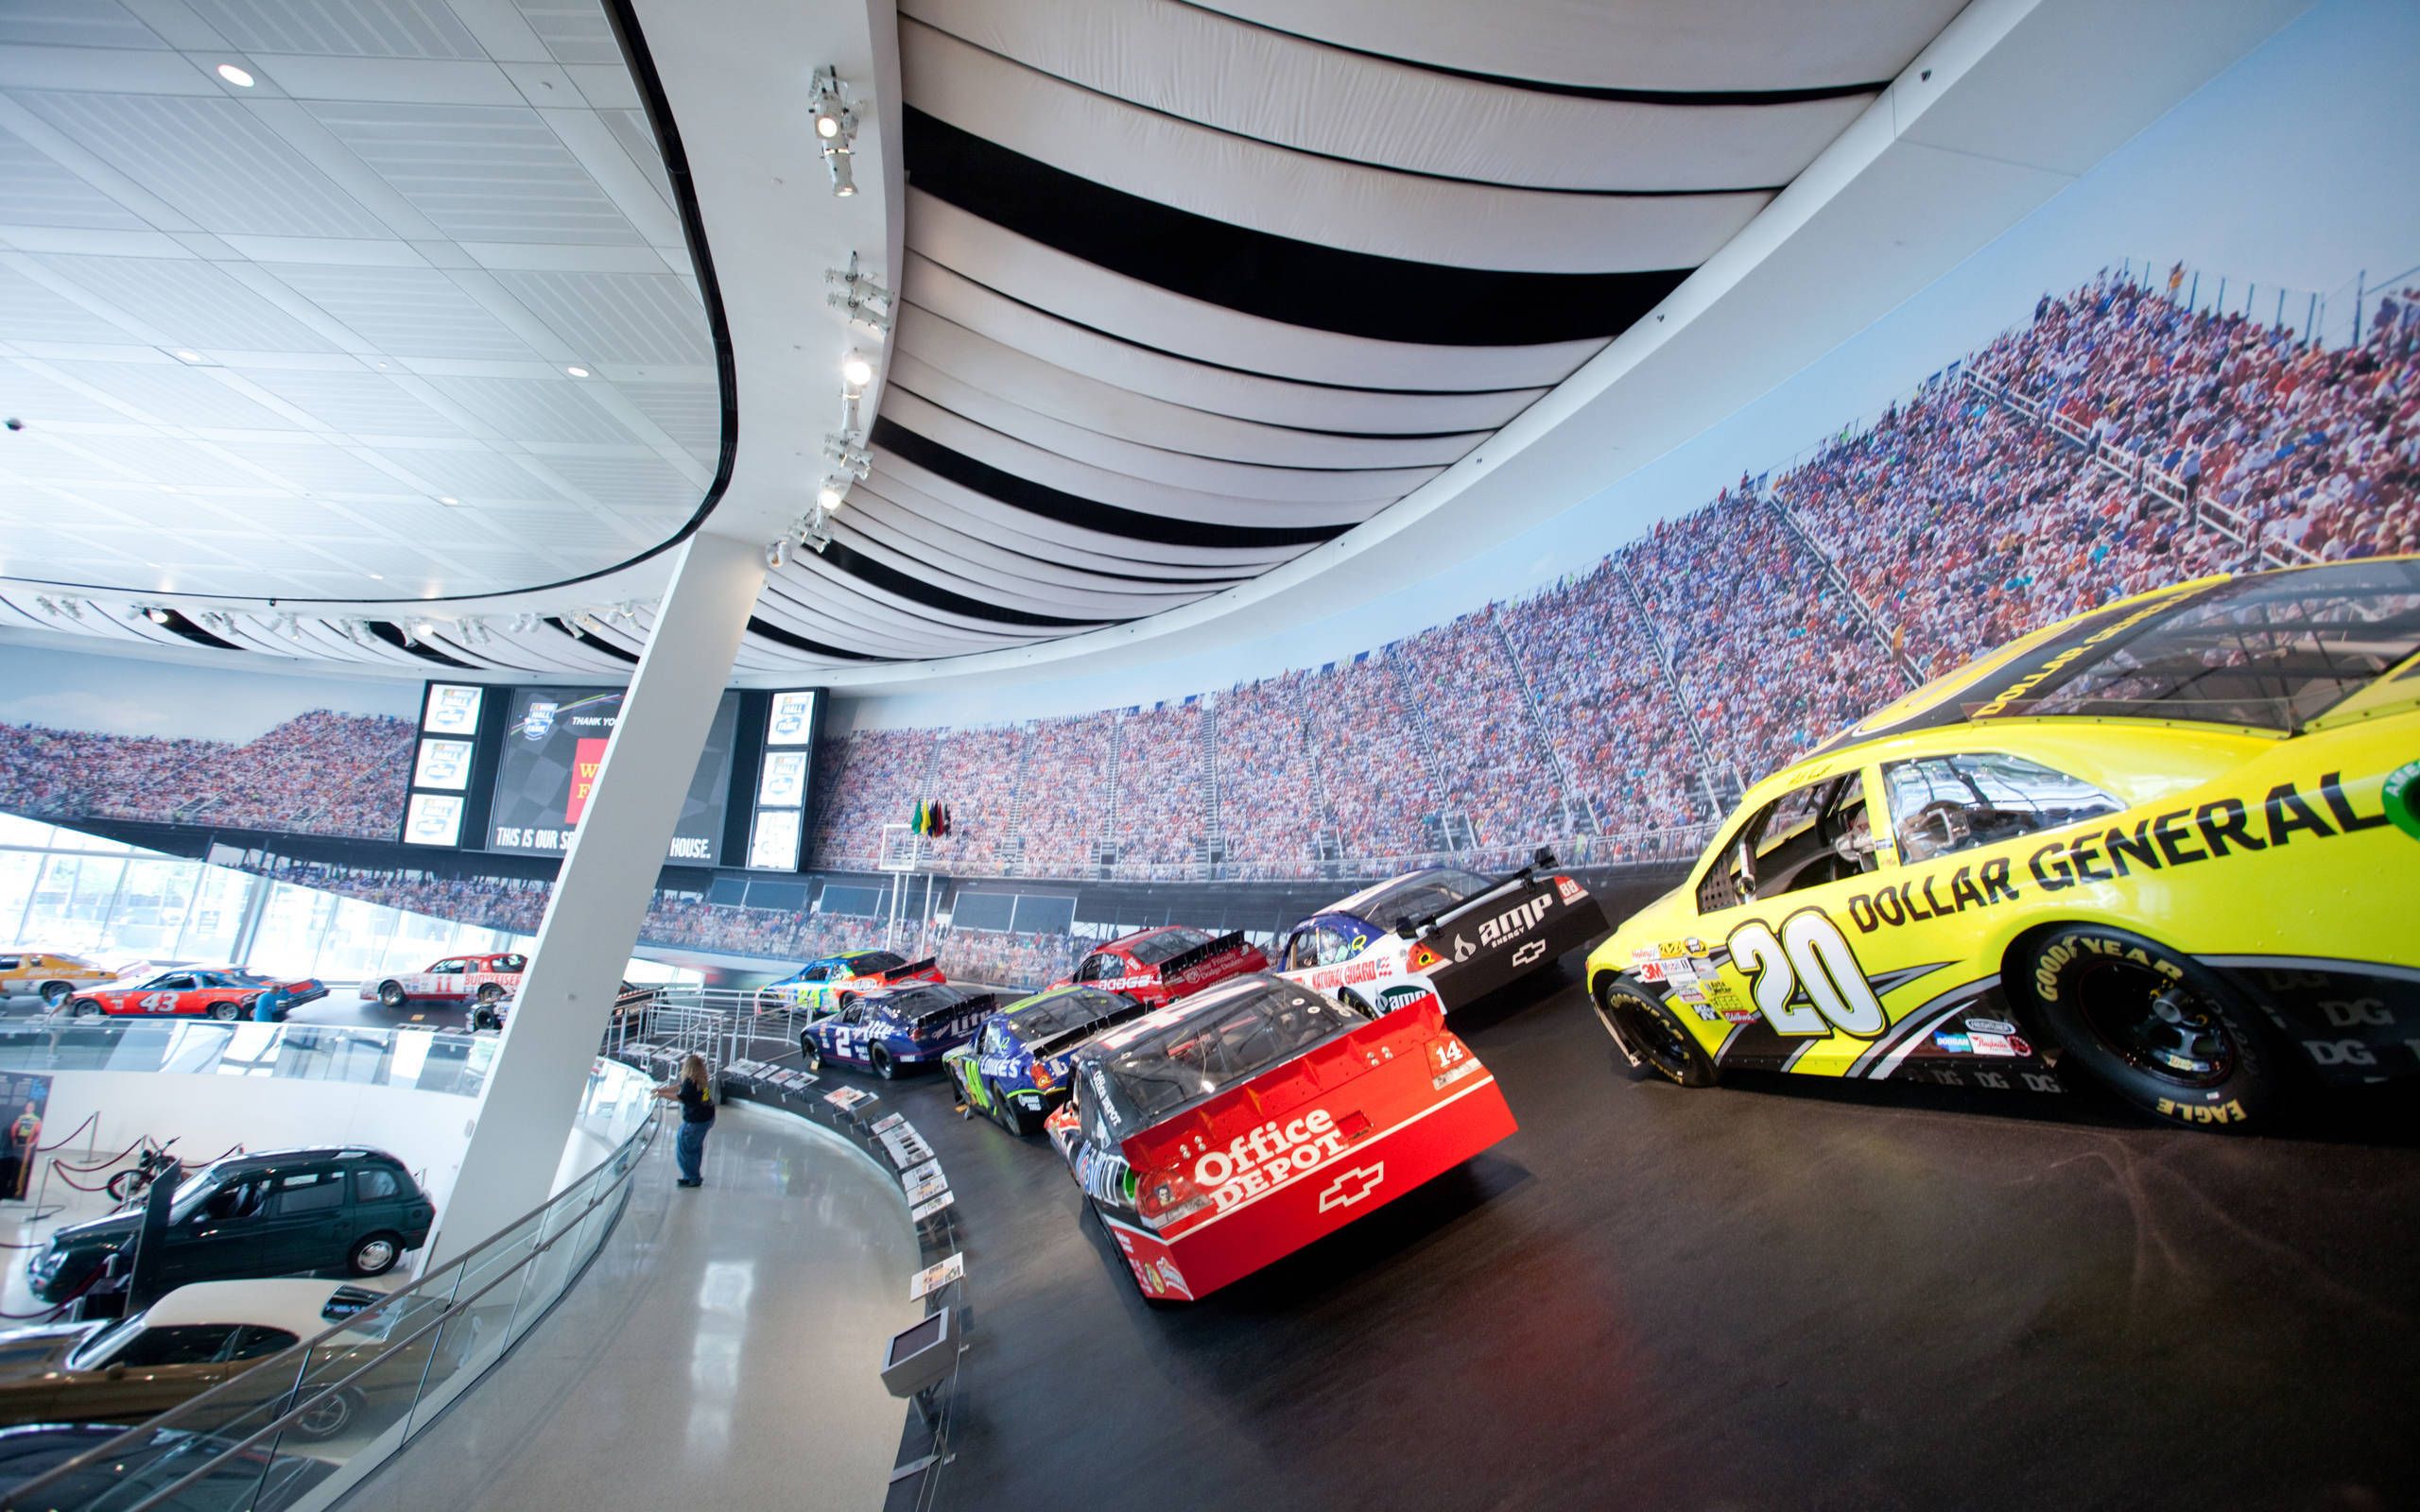 NASCAR Hall of Fame of Charlotte